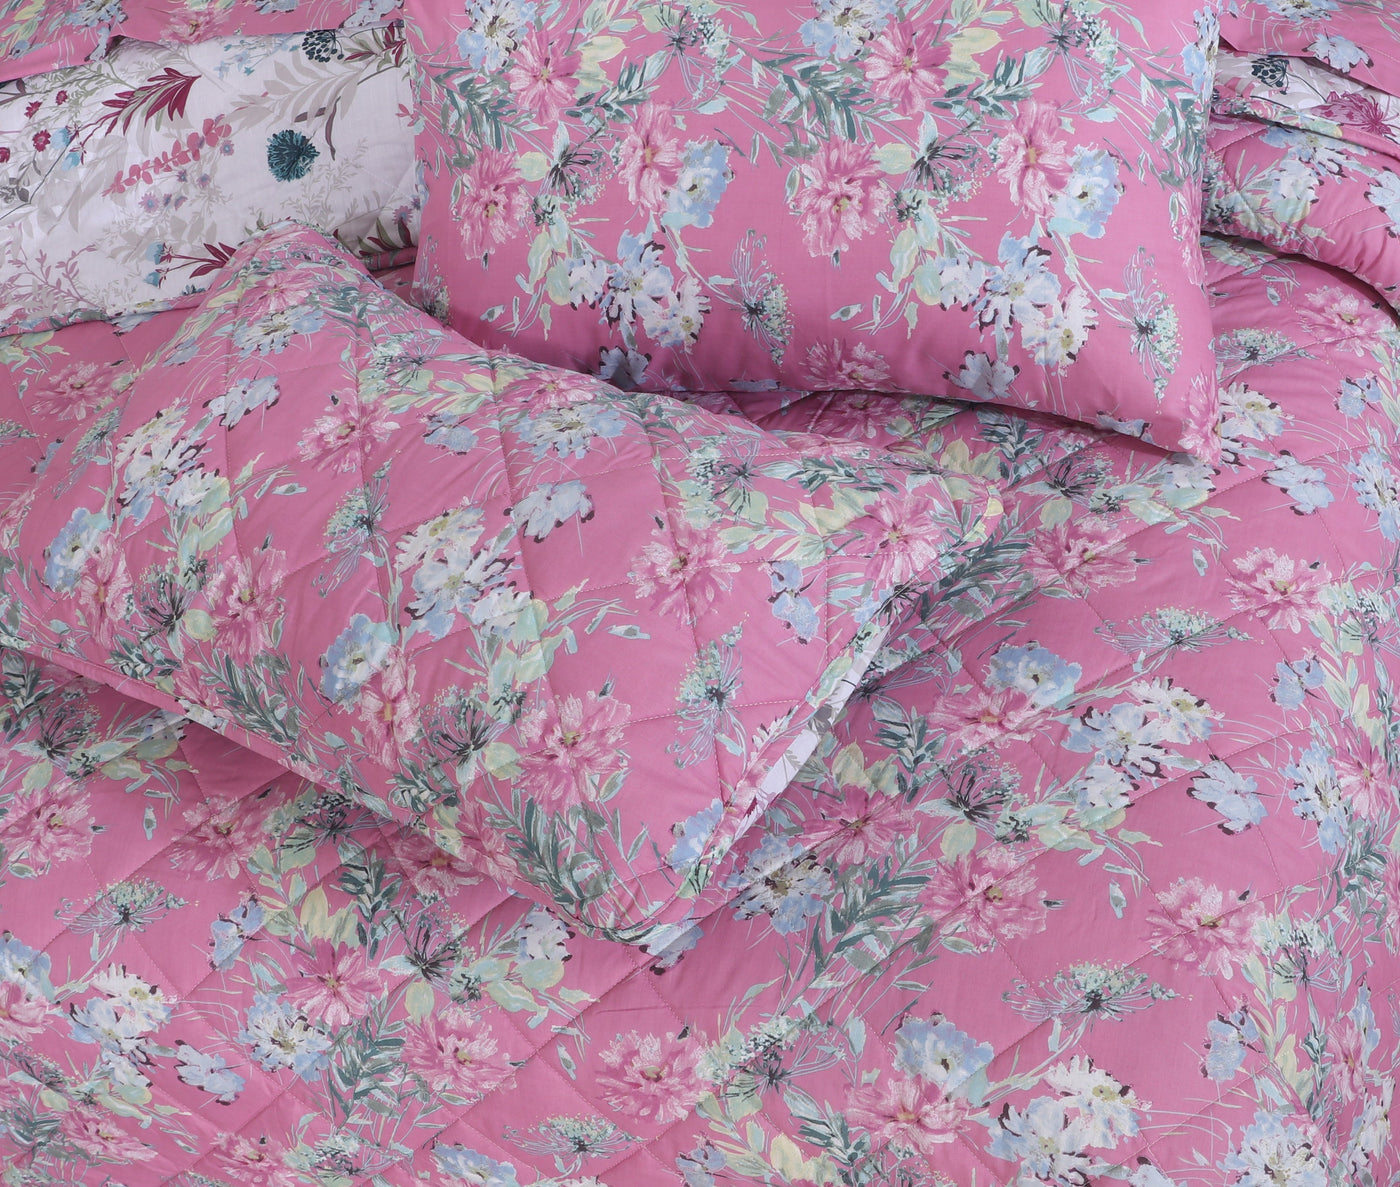 Quilted Summer Comforter 6 Pcs Set Design-9